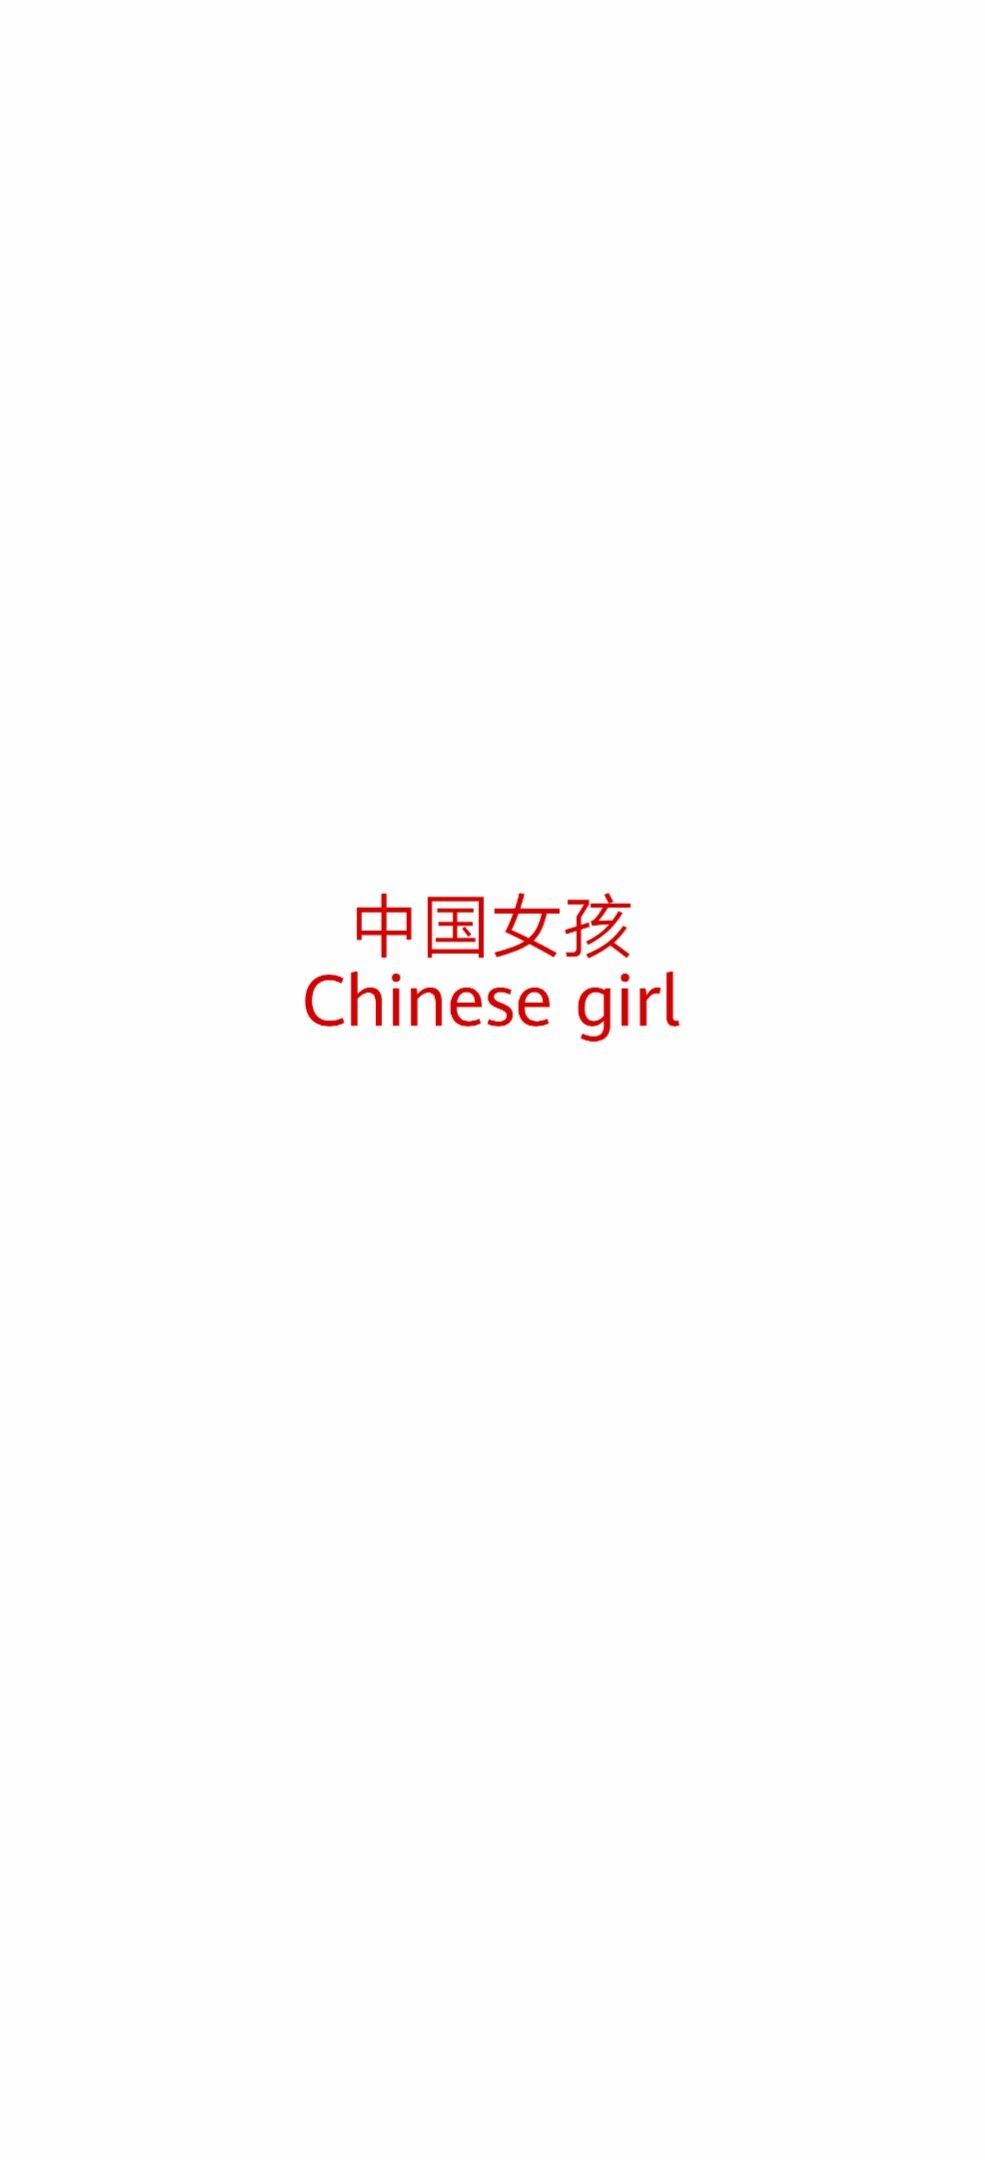 壁纸 文字 平铺Chinese girl中国女孩